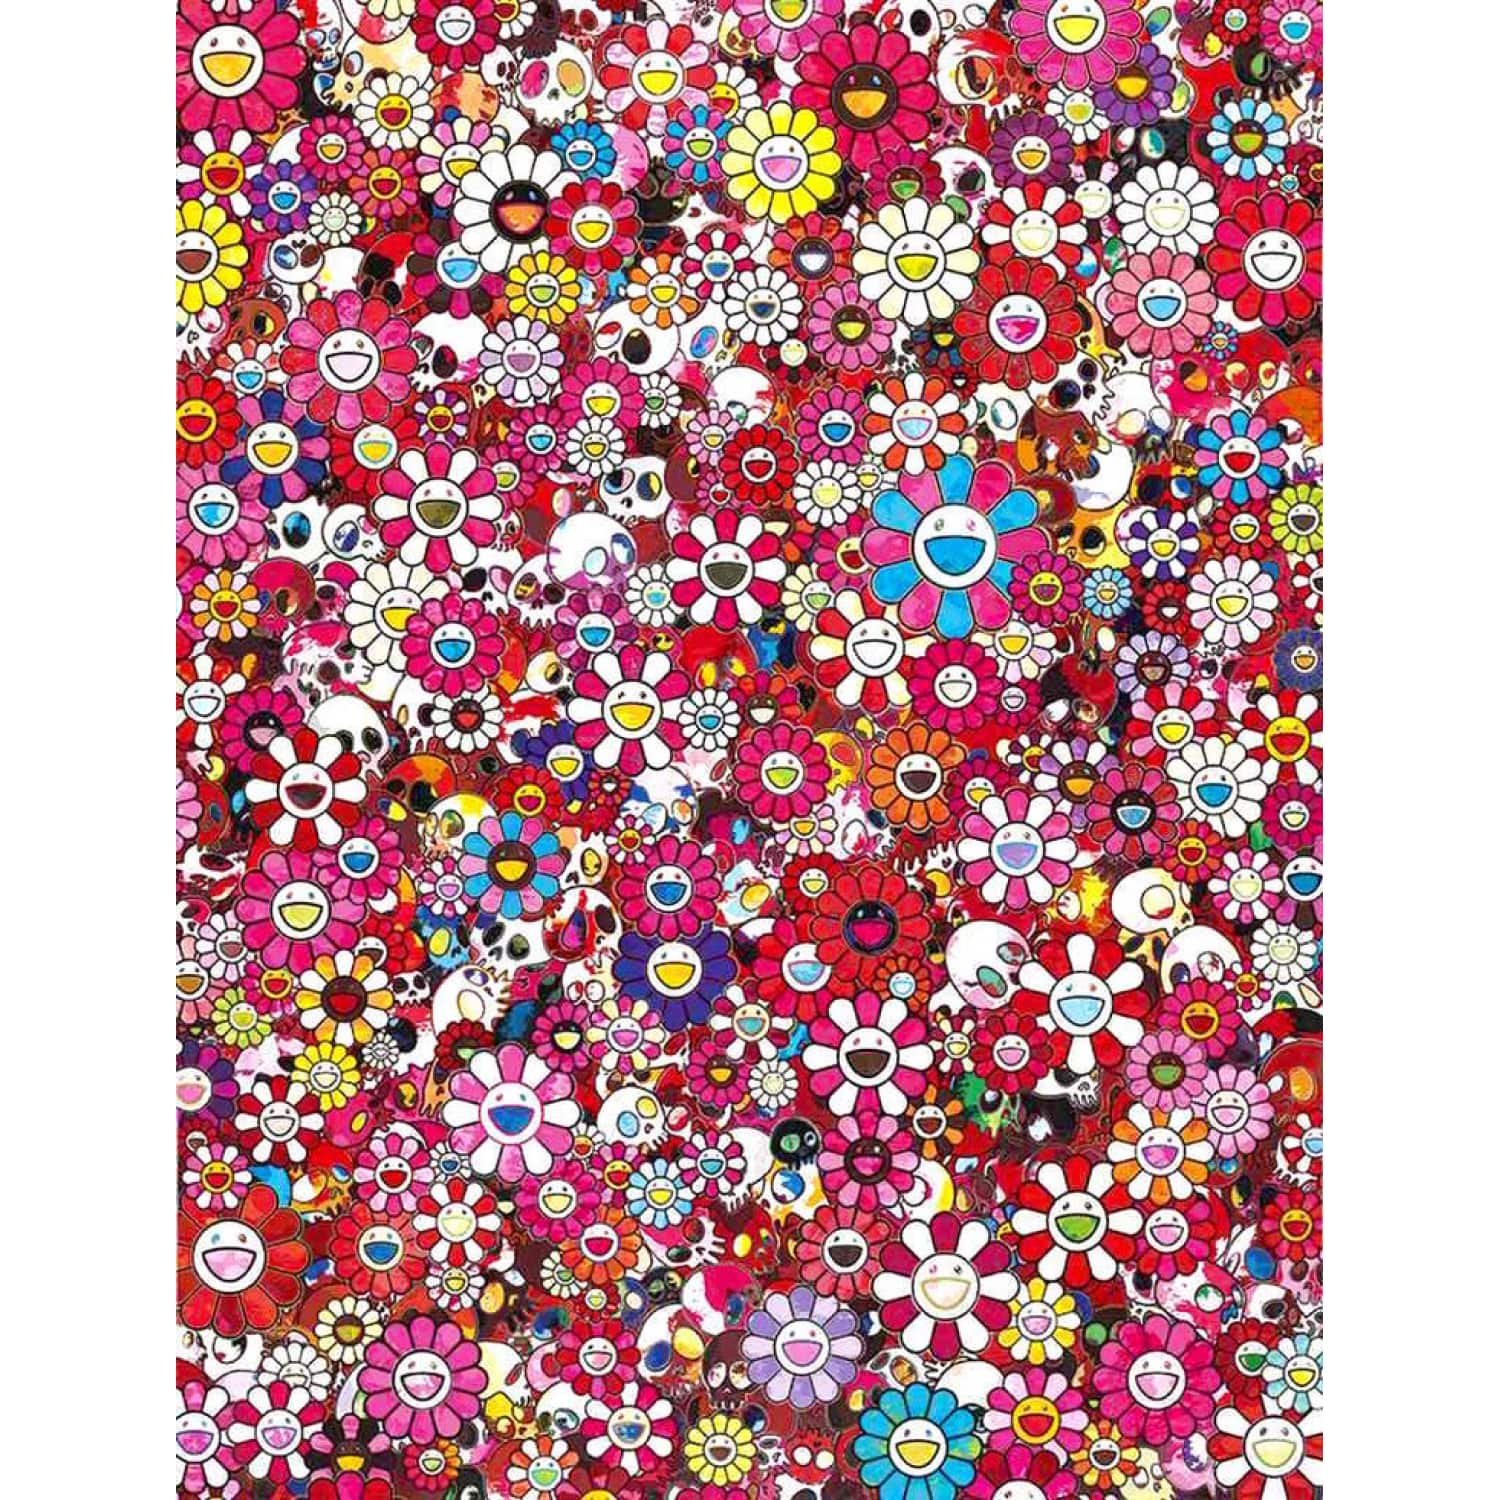 Artwork “Flower cushion” from Takashi Murakami - Dope! Gallery